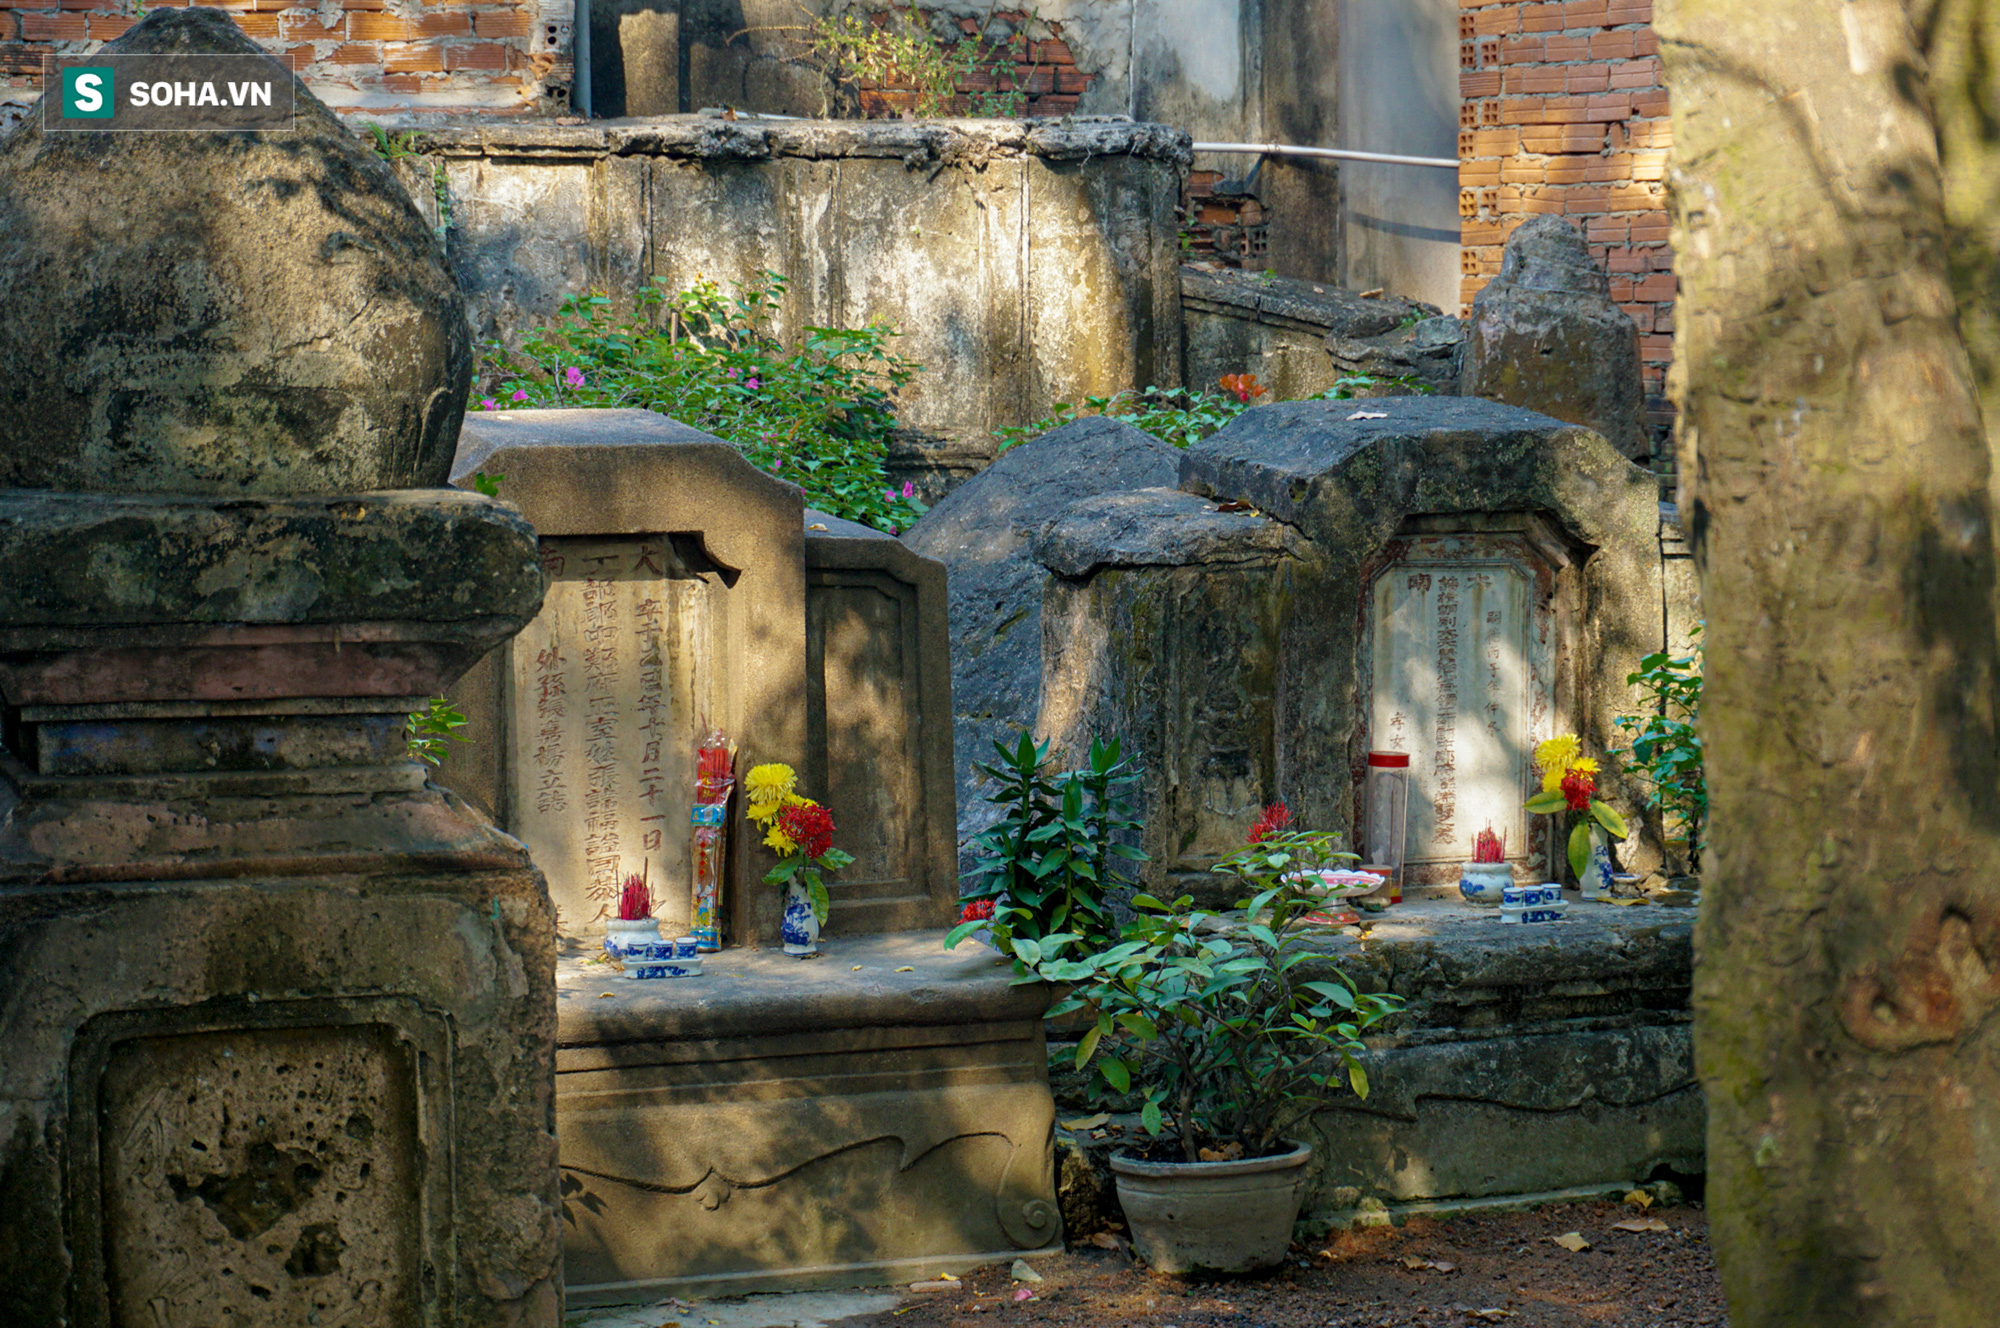 Bí ẩn mộ yểm tại nơi yên nghỉ của người 3 lần từ chối chức bộ trưởng của vua Minh Mạng - Ảnh 9.